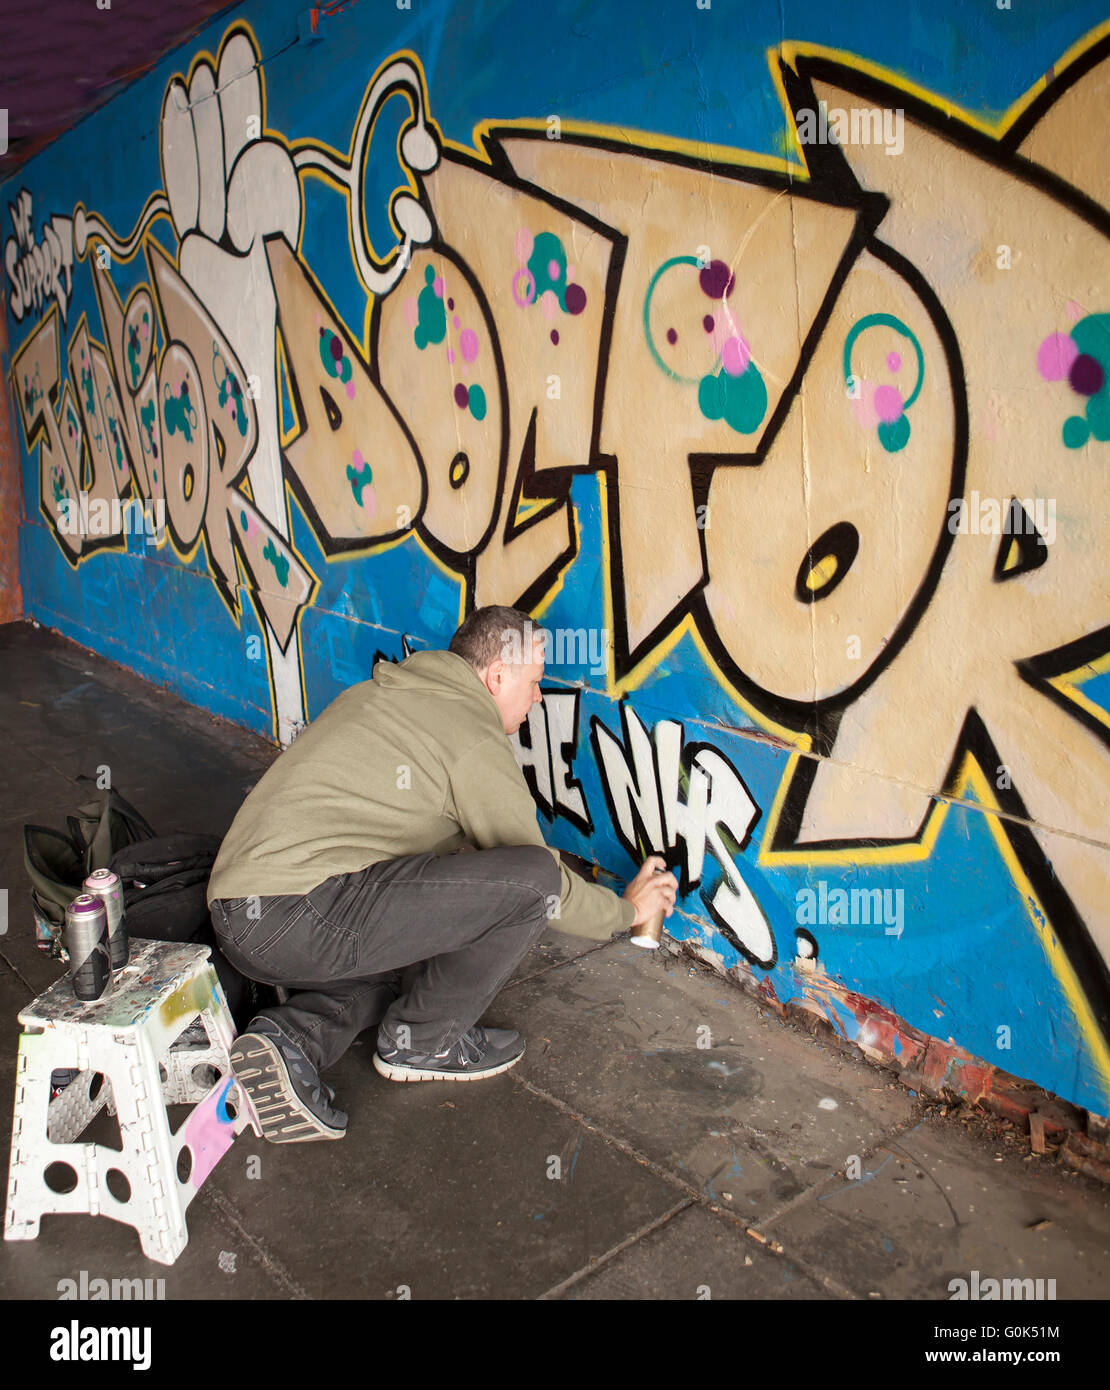 Londra, Regno Unito. Il 2 maggio 2016. Artista il supporto per i medici in formazione. Un artista di graffiti è venuto fuori a sostegno dei medici in formazione, dedicando un pezzo di lavorare per loro. Il lavoro è stato fatto nella Southbank di Londra. Credito: Jane Campbell/Alamy Live News Foto Stock